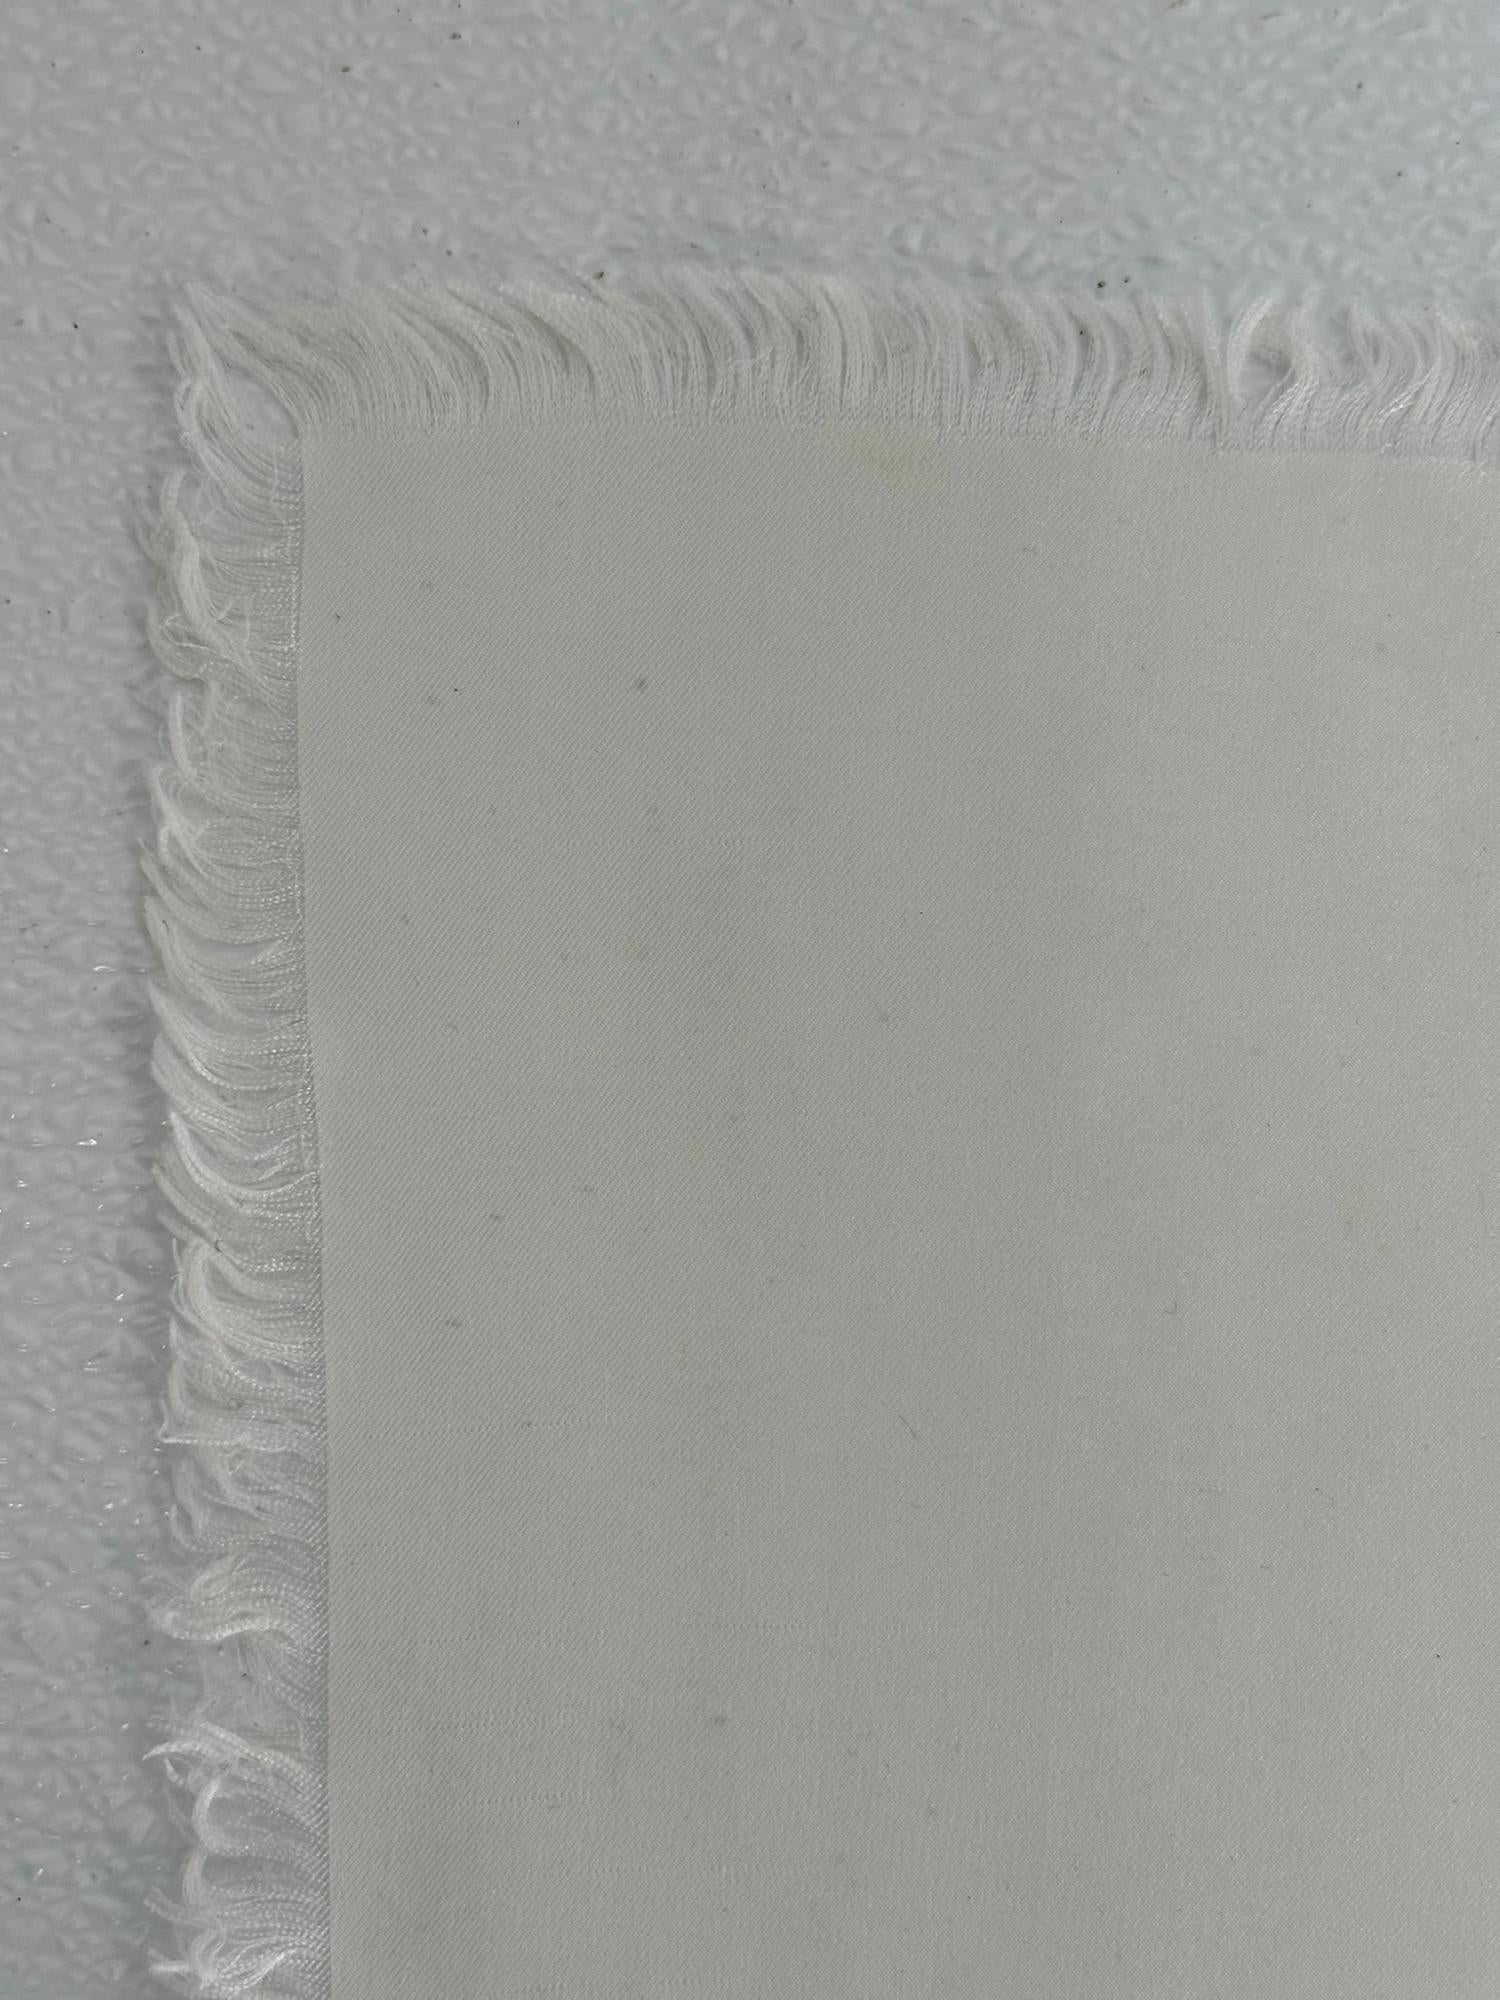 Yves Saint Laurent Rare White Silk Fringe Hem Scarf Un Silhouette Parisienne  For Sale 7